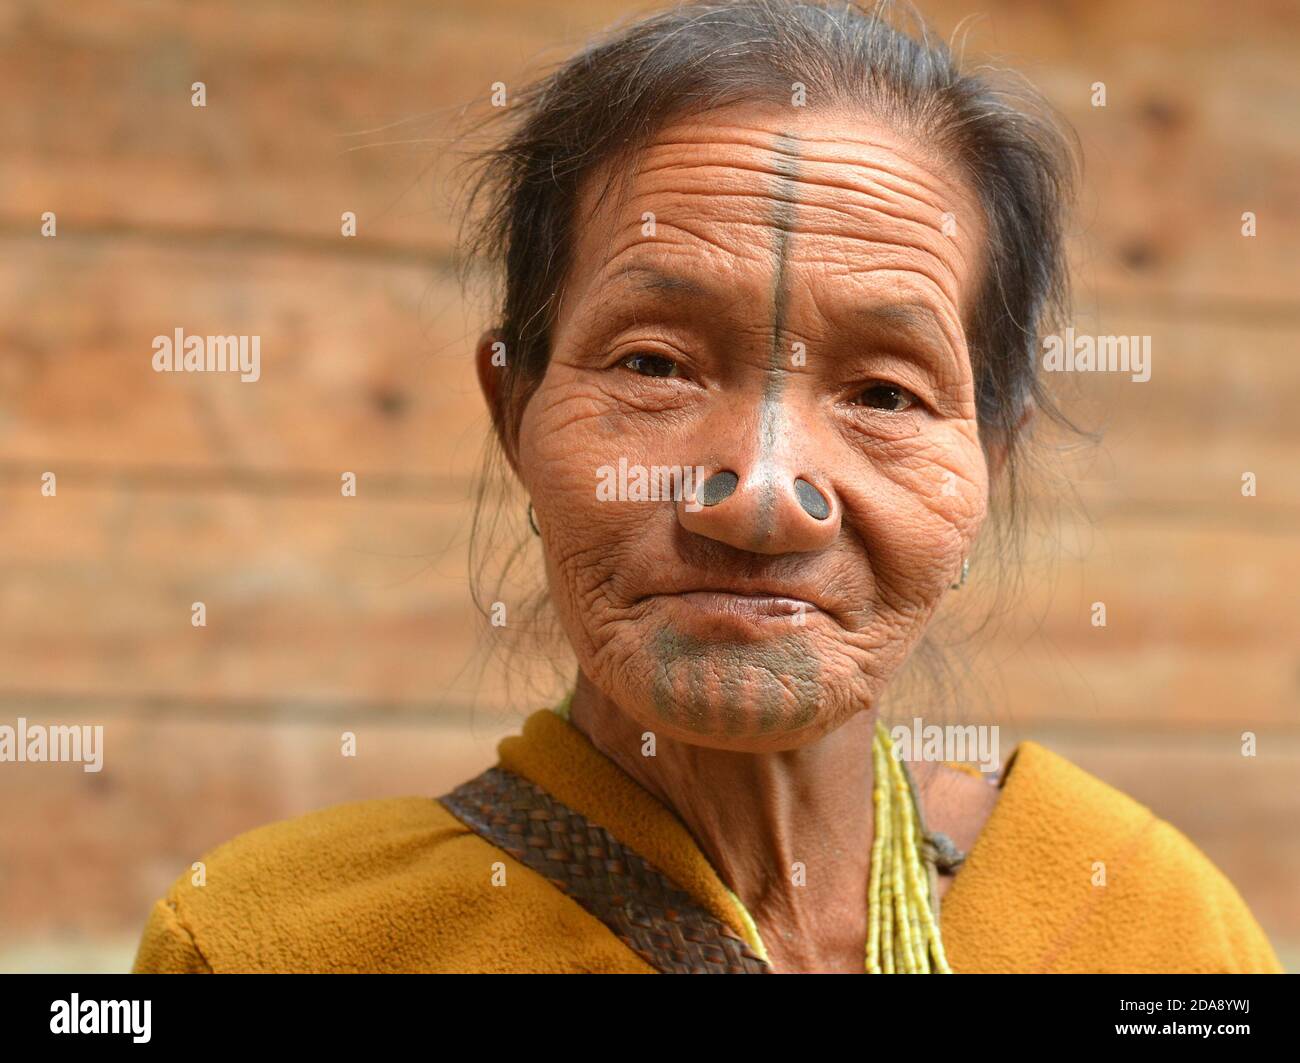 La mujer tribal de la minoría étnica Apatani del noreste de la India con los tapones negros de la nariz de madera y los tatuajes tradicionales de la cara posan para la cámara. Foto de stock